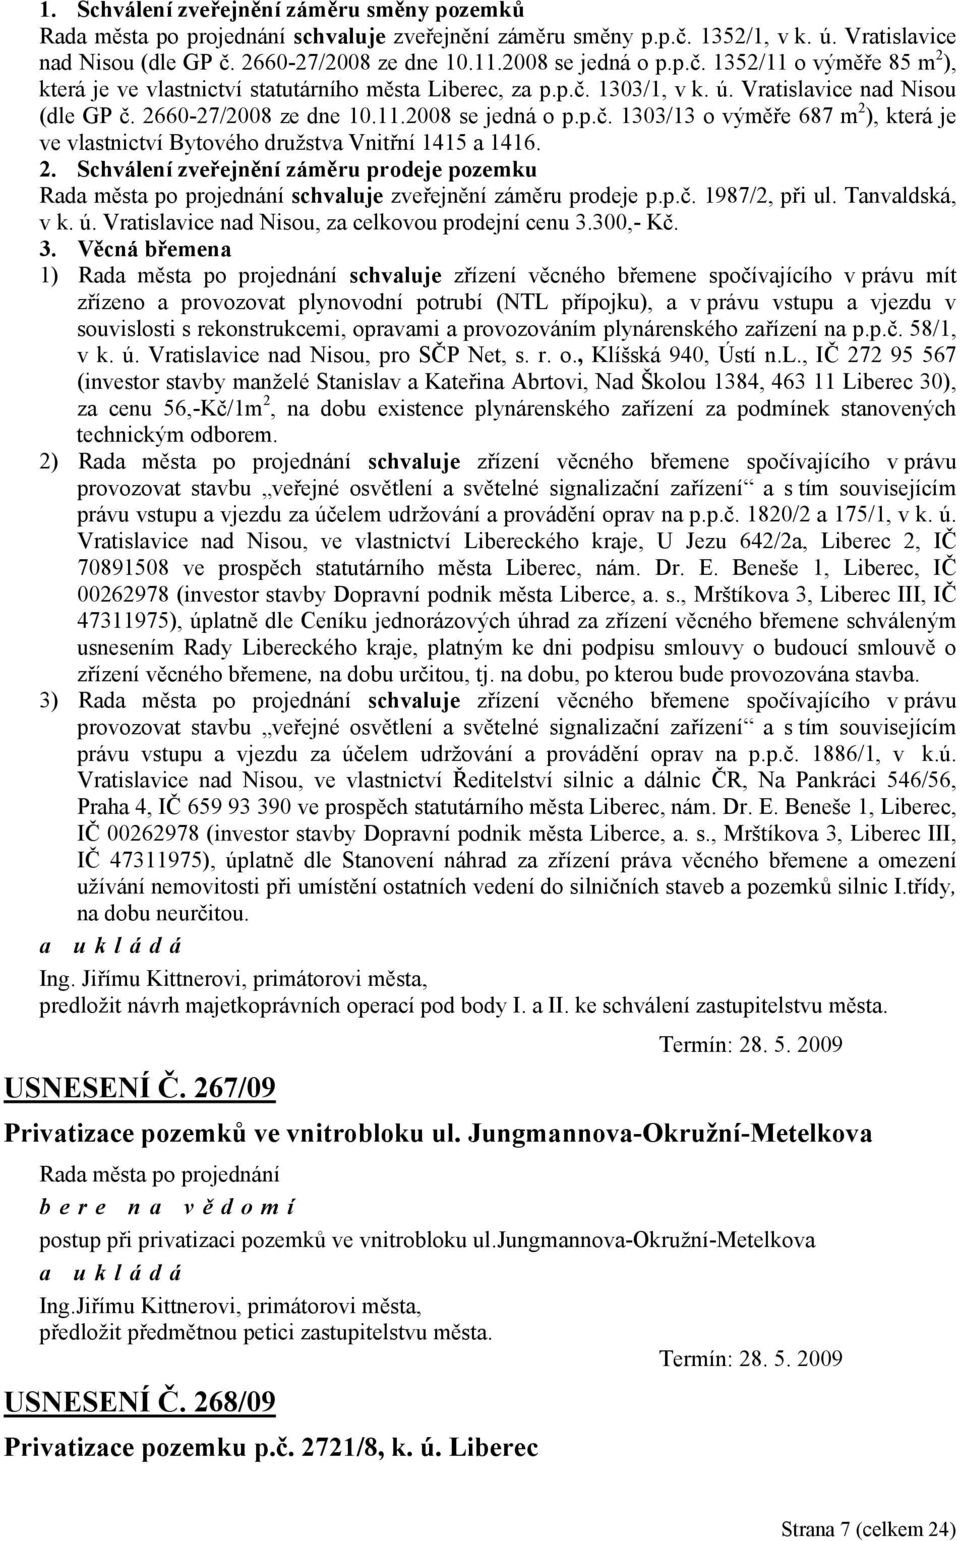 p.č. 1987/2, při ul. Tanvaldská, v k. ú. Vratislavice nad Nisou, za celkovou prodejní cenu 3.